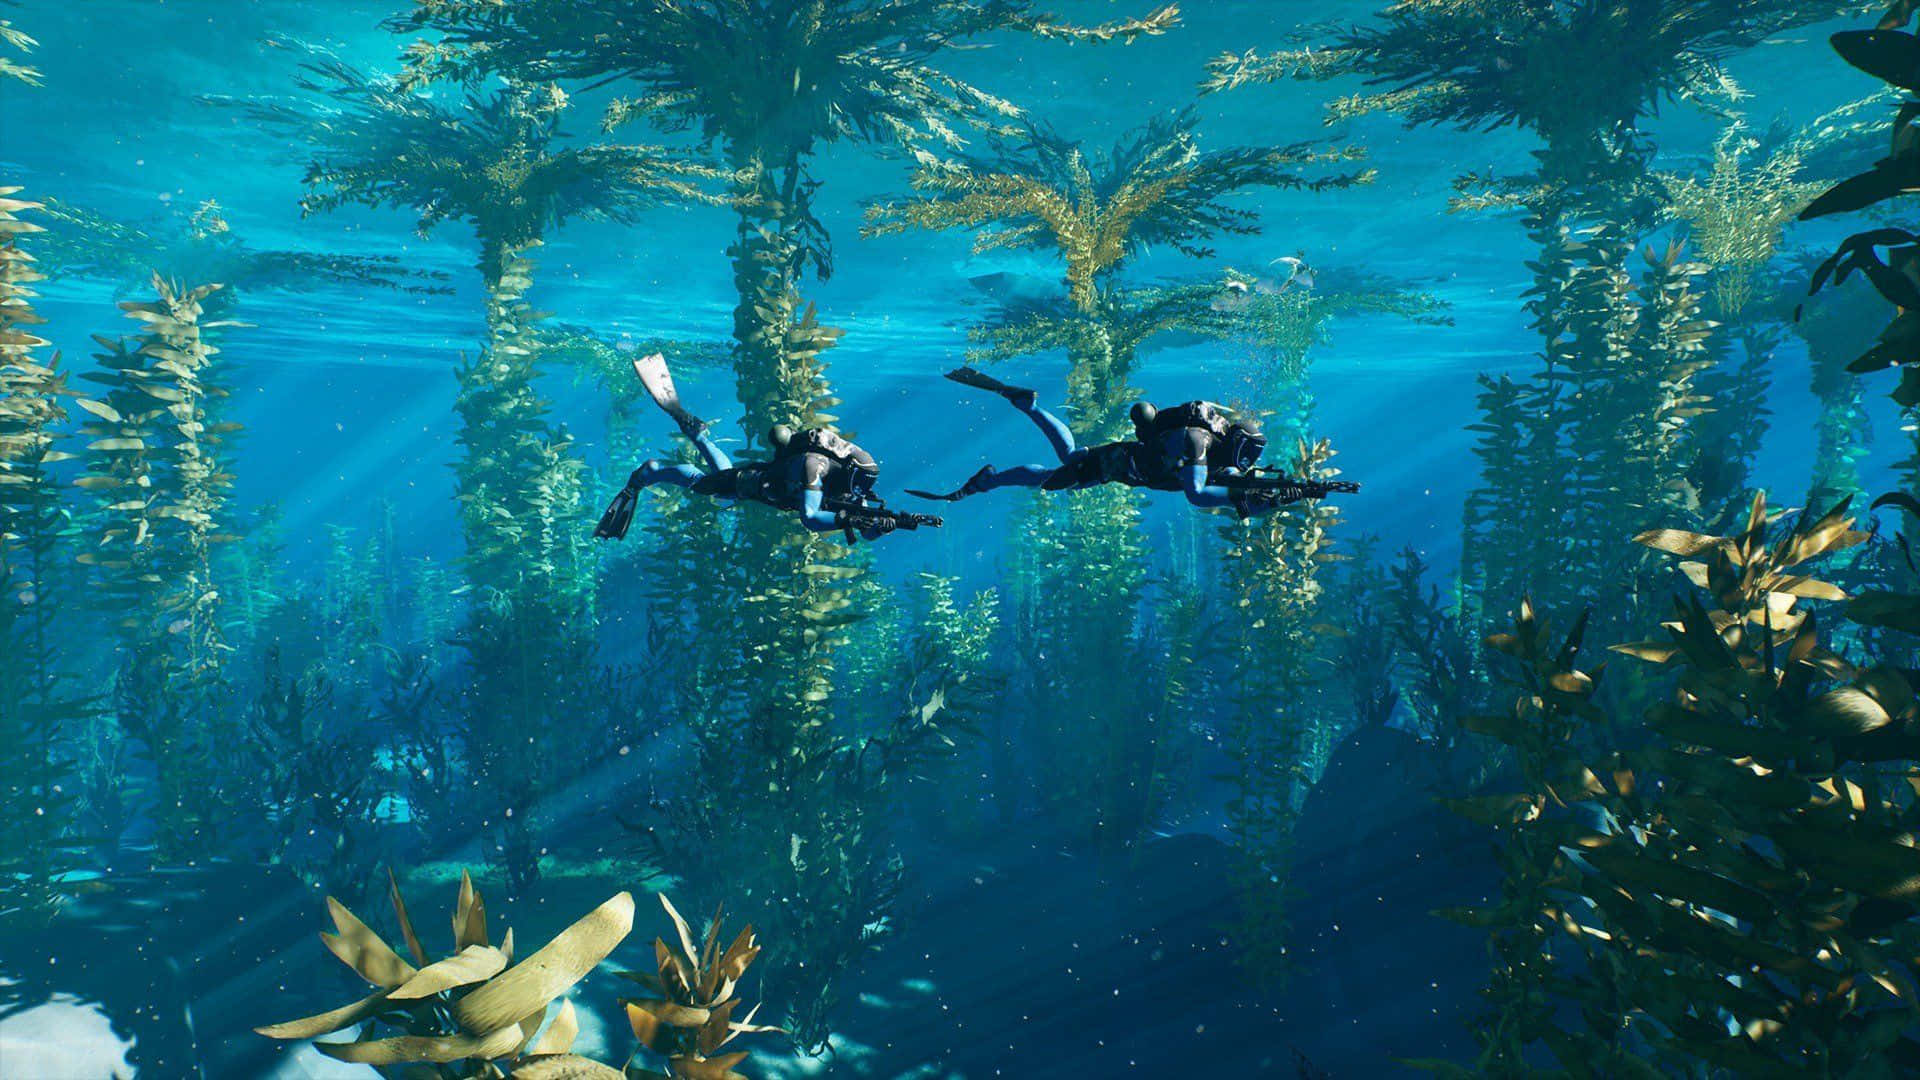 Underwater Adventures in a Lush Aquatic World